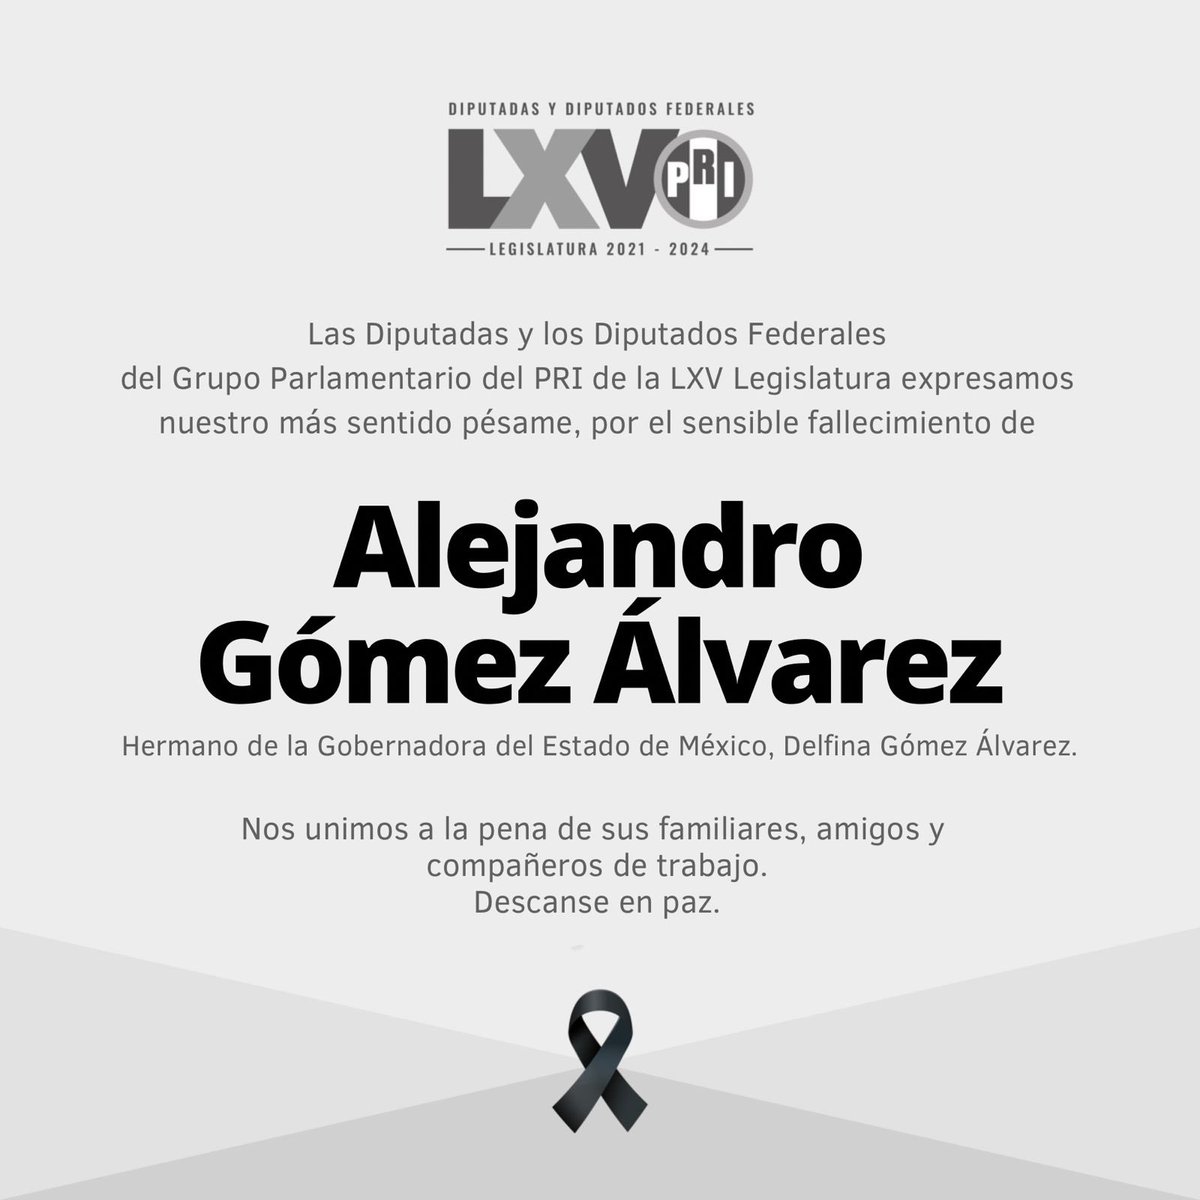 Expresamos nuestras más sentidas condolencias a la Gobernadora del Estado de México, @delfinagomeza, y a su familia por el sensible fallecimiento de su hermano, Alejandro Gómez Álvarez. Nuestra solidaridad en estos momentos tan difíciles. Descanse en paz.